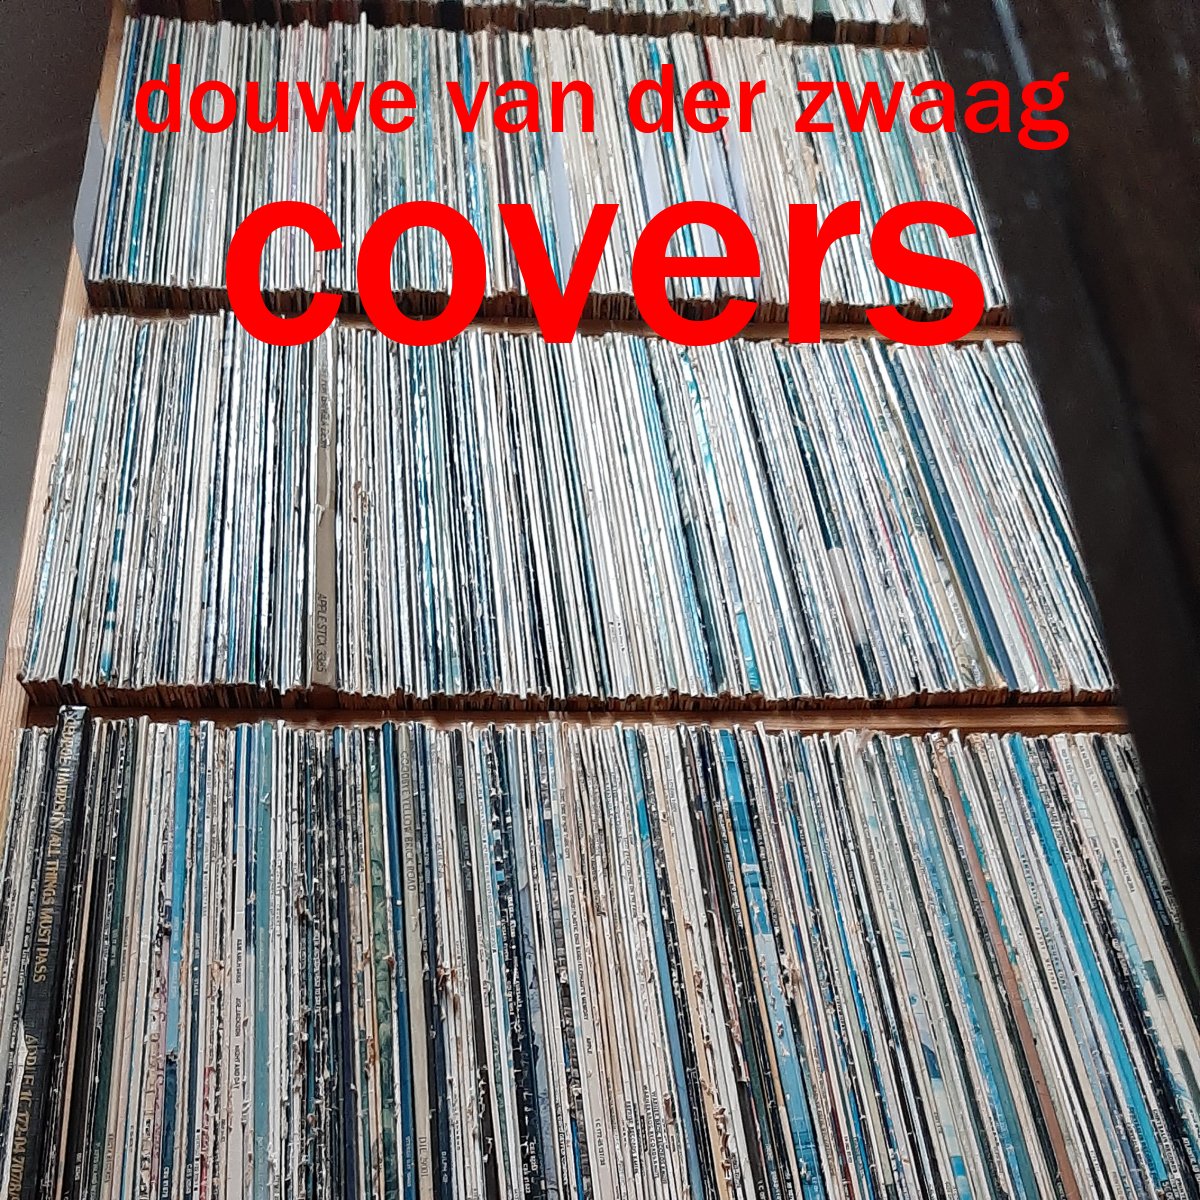 Covers - Album cover